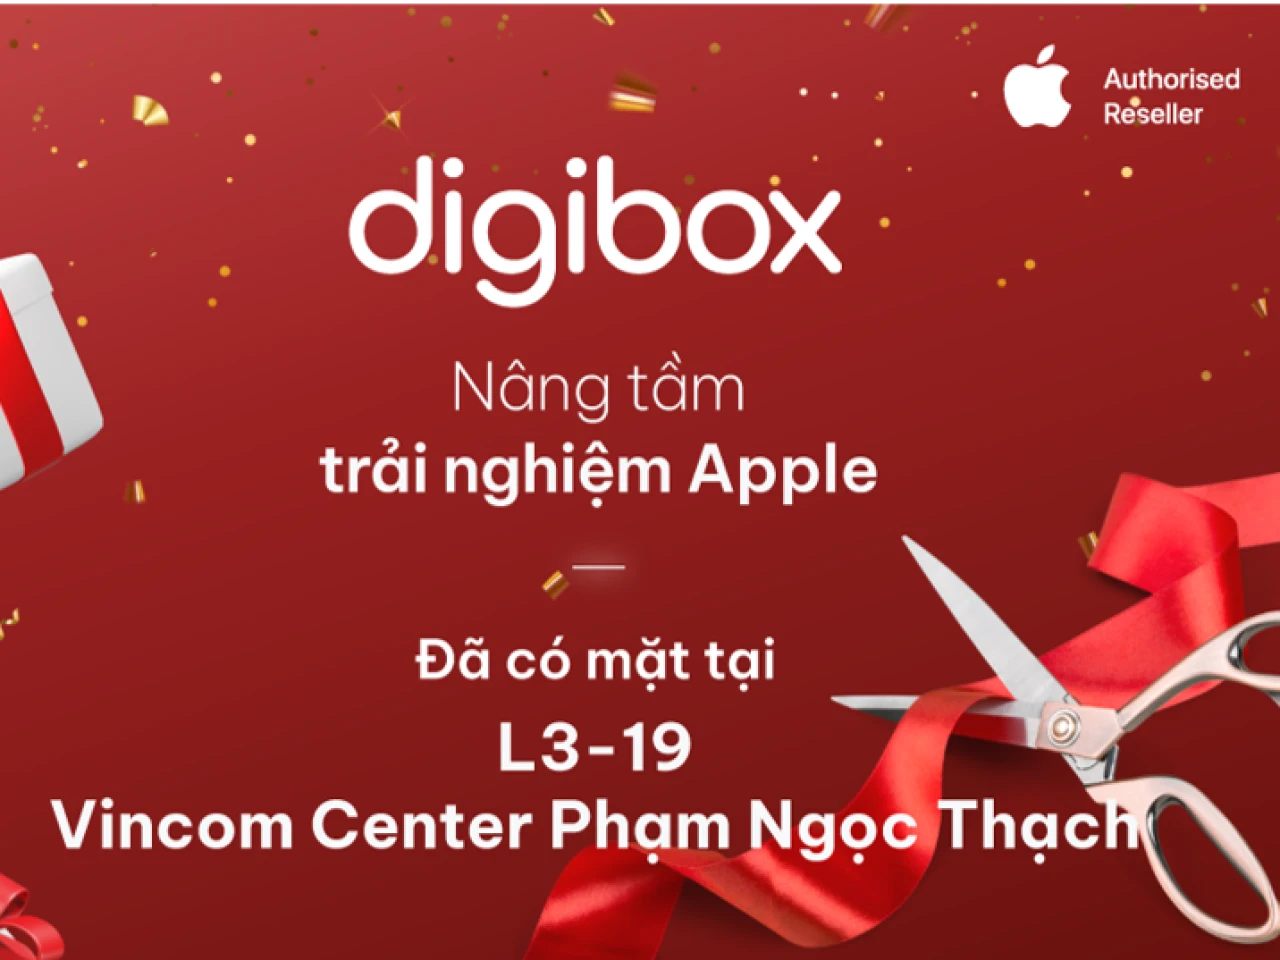 Digibox - Đại lý uỷ quyền Apple đã có mặt tại Vincom Center Phạm Ngọc Thạch